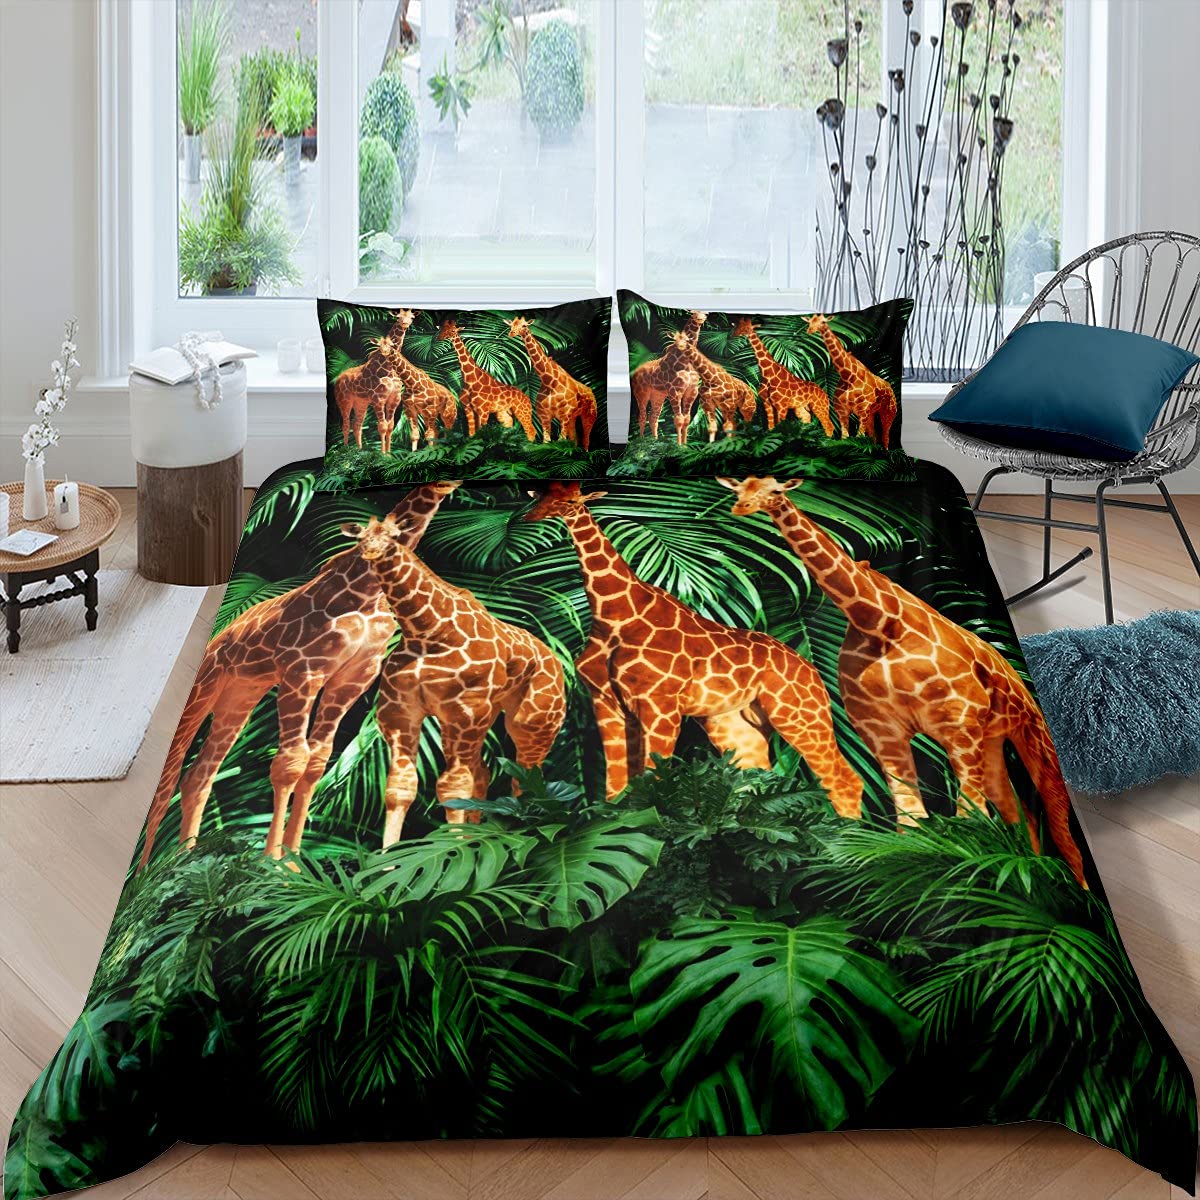 Jungle giraffe duvet cover